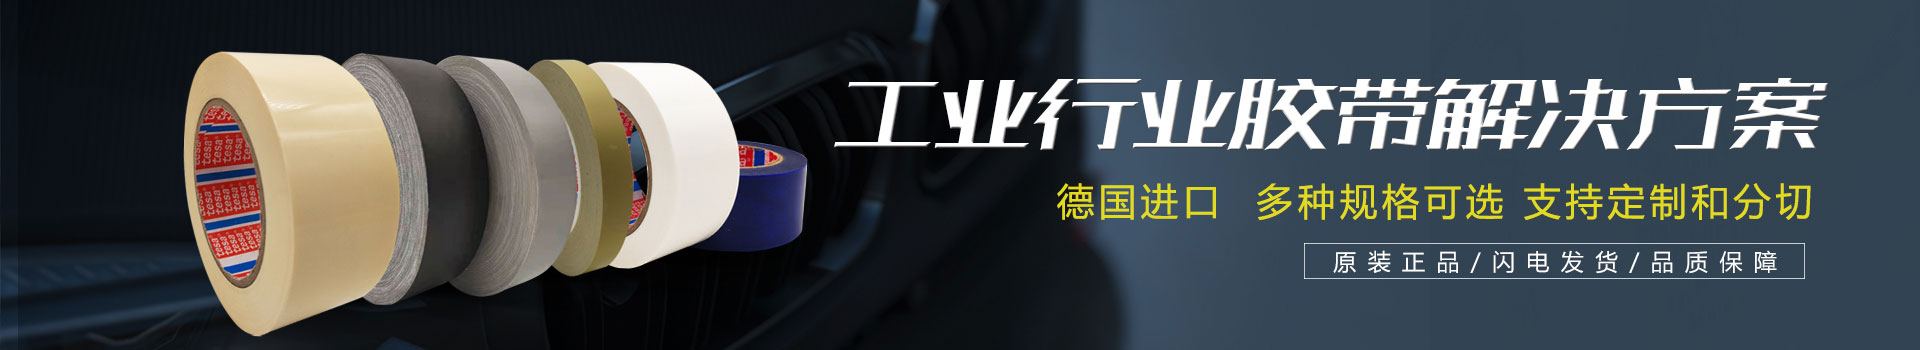 "幕"后之王，德莎光学透明胶带6980x系列新品发布